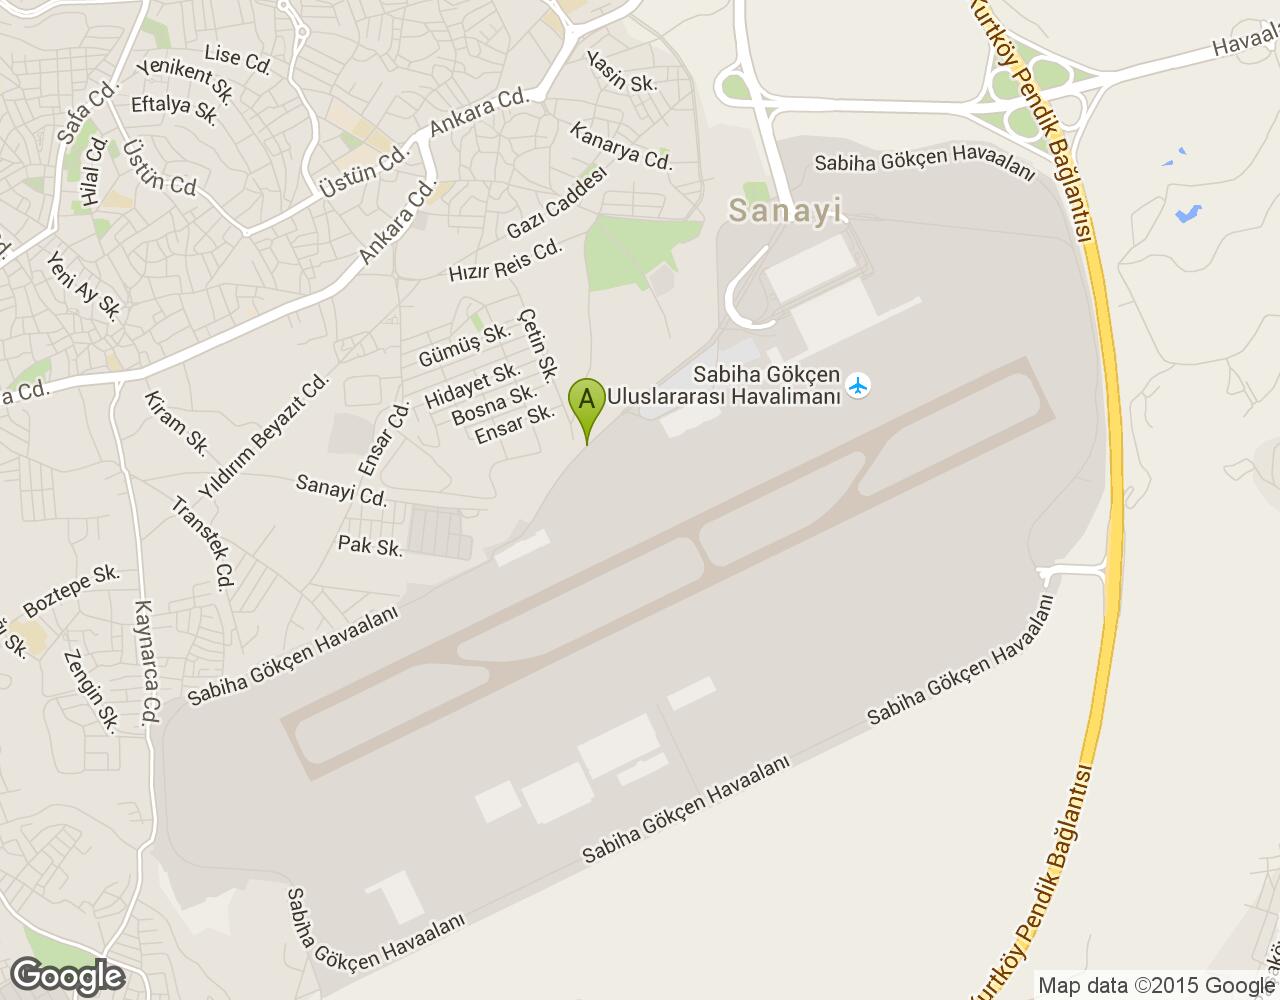 Havaalanı Sabiha Gökçen harita